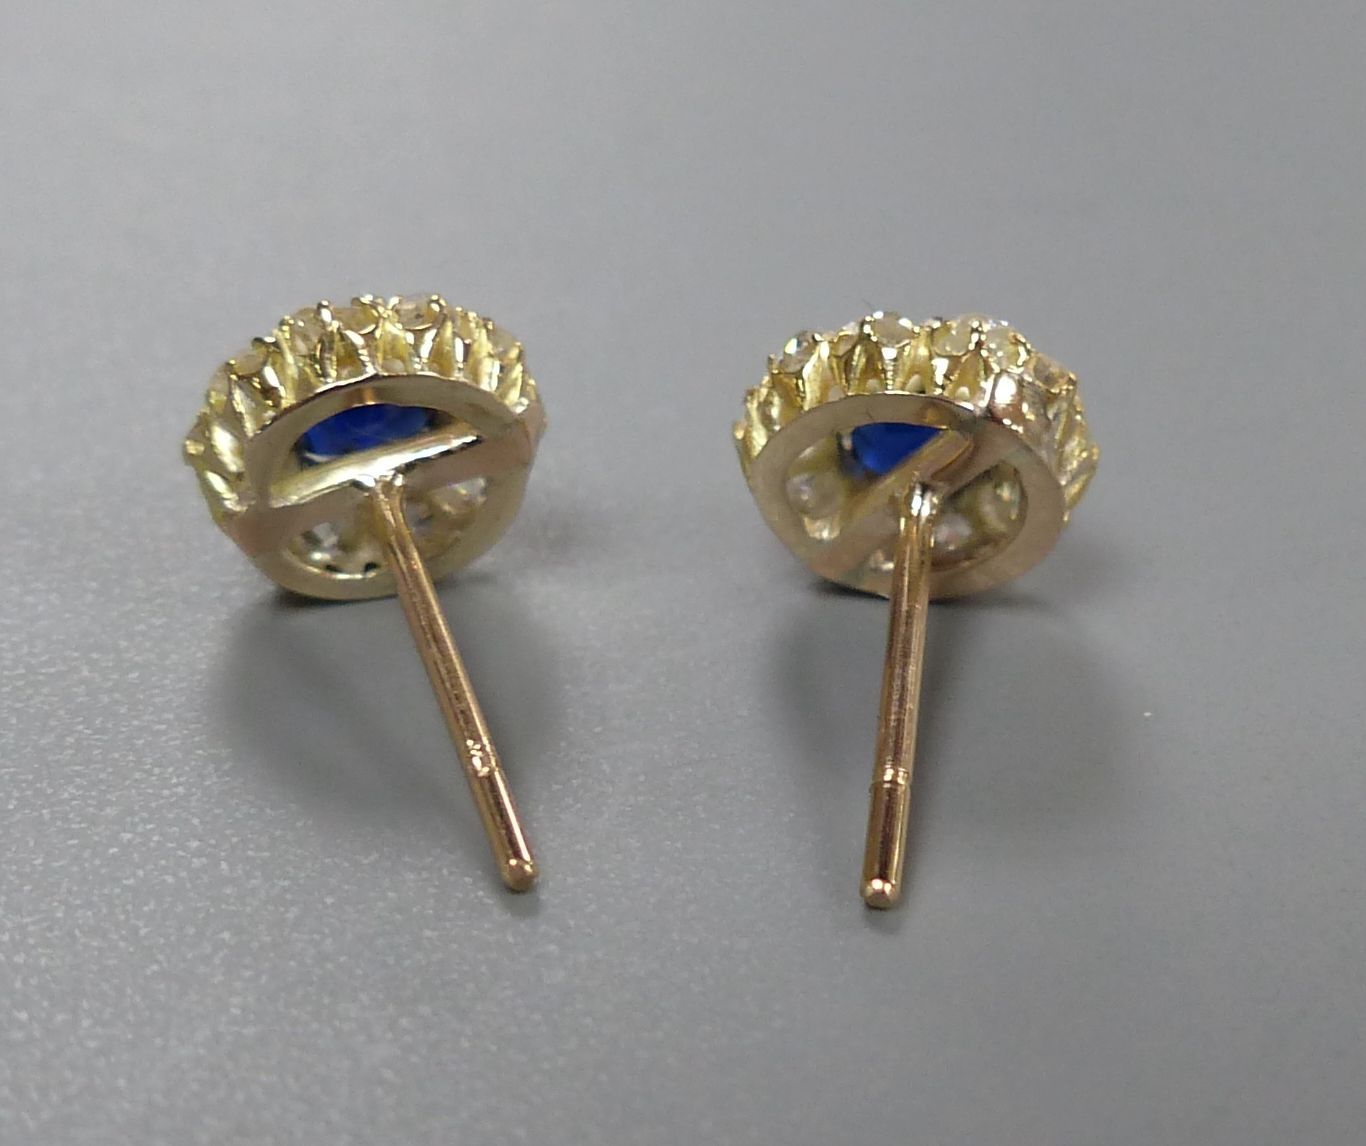 A pair yellow metal, sapphire and diamond circular cluster earstuds (no butterflies), diameter 8mm, gross 1.6 grams.